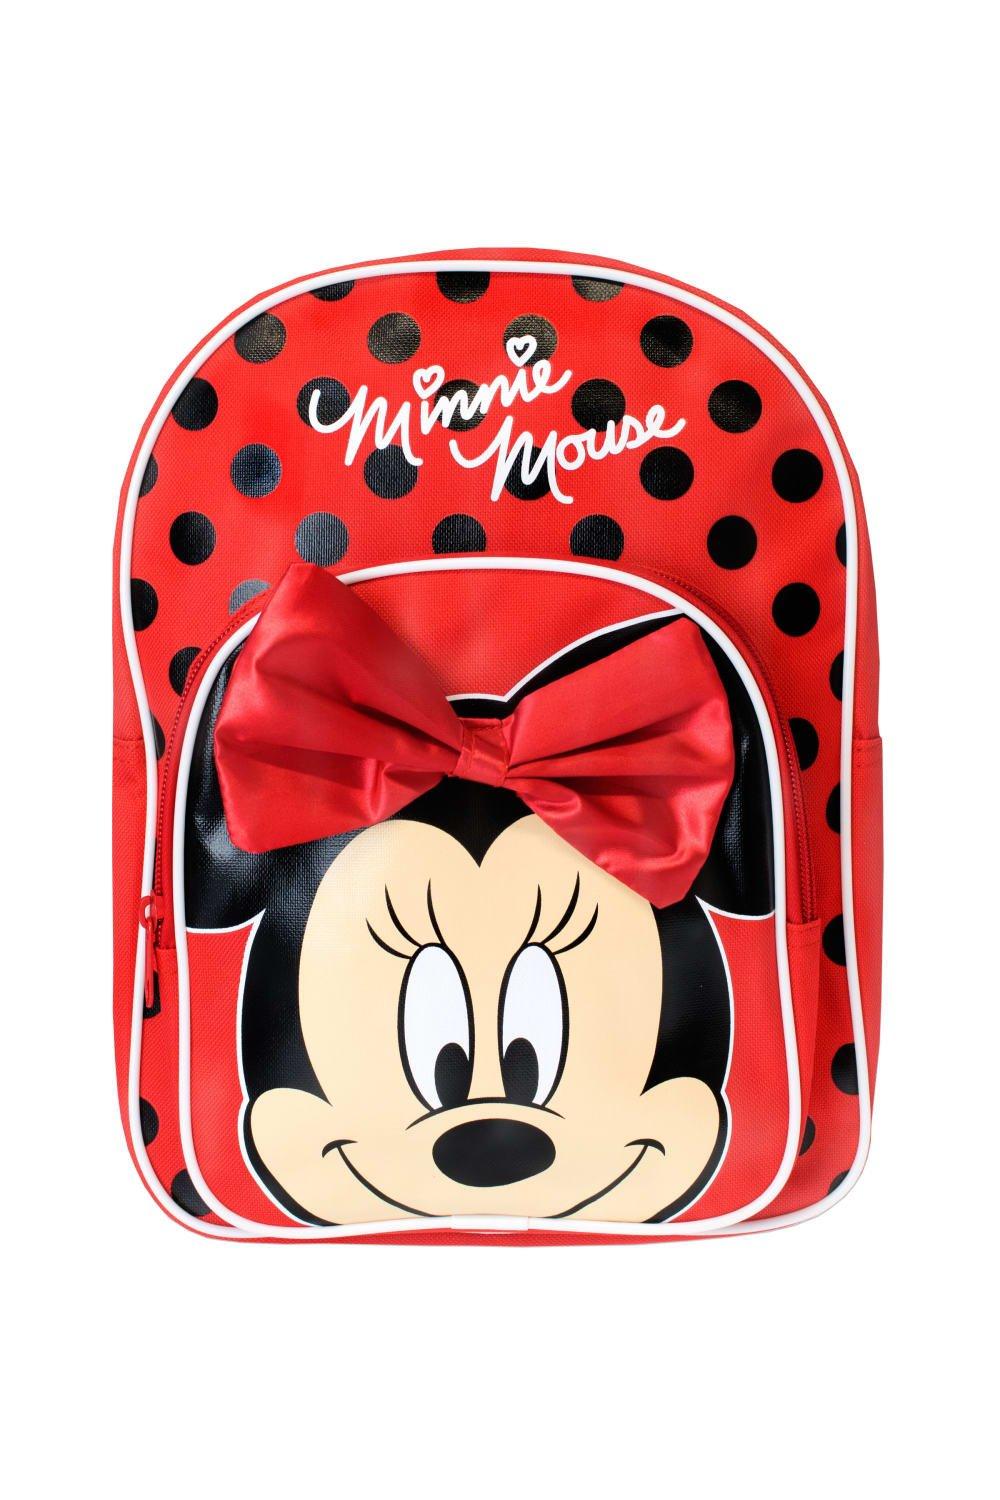 Детский рюкзак Минни Маус с 3D бантиком Disney, красный рюкзак серый 30 х 24 см